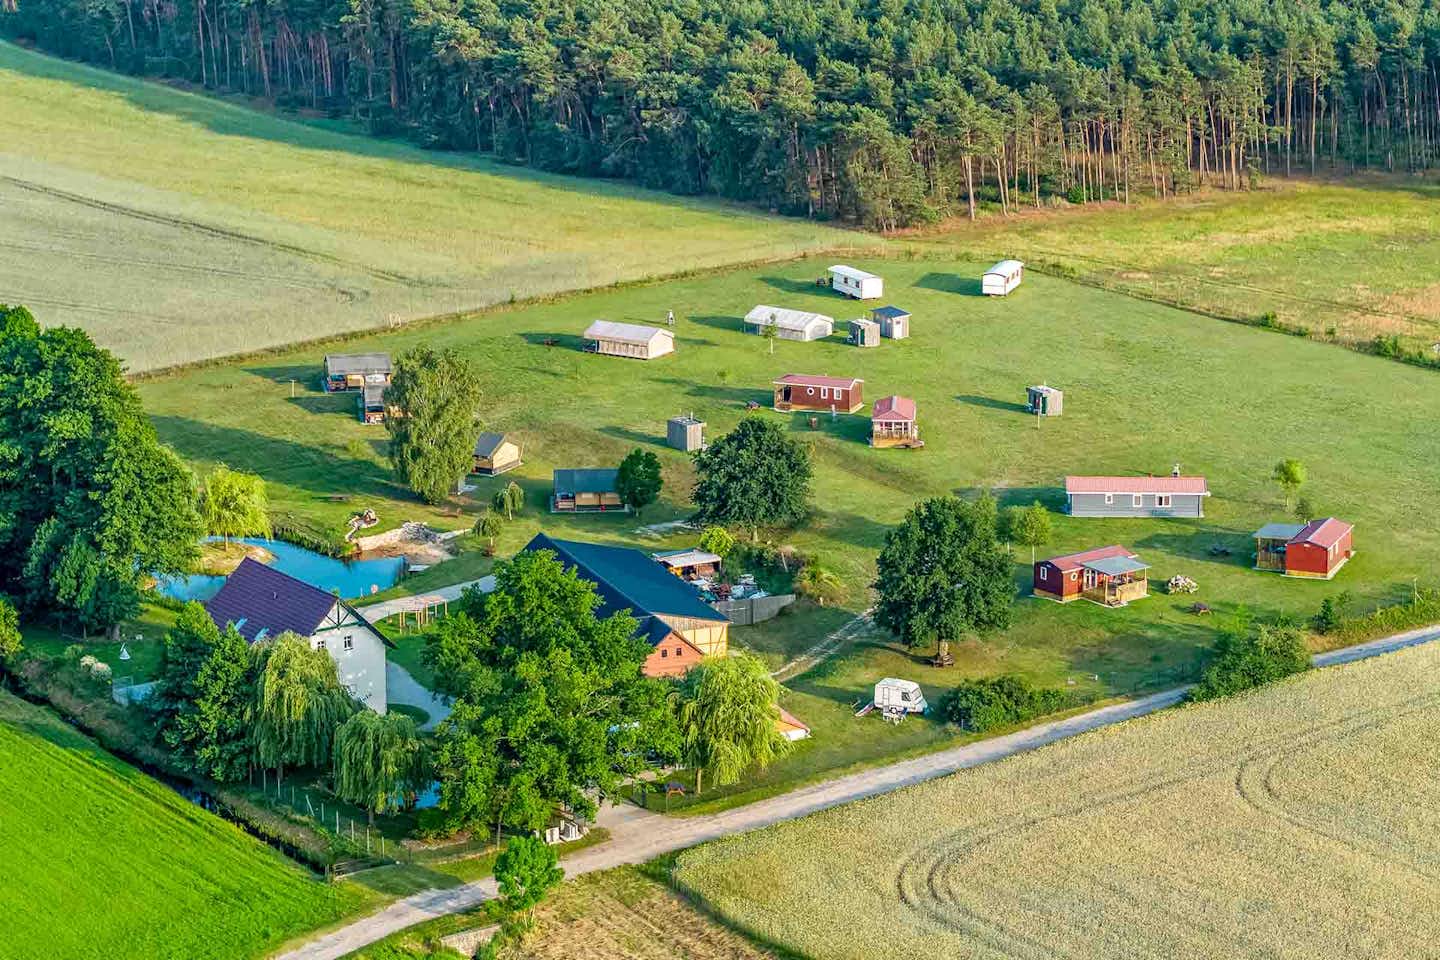 Camping Landgoed Voigtsmühle - Luftaufnahme des Campingplatzes umgeben von Feldern und Natur